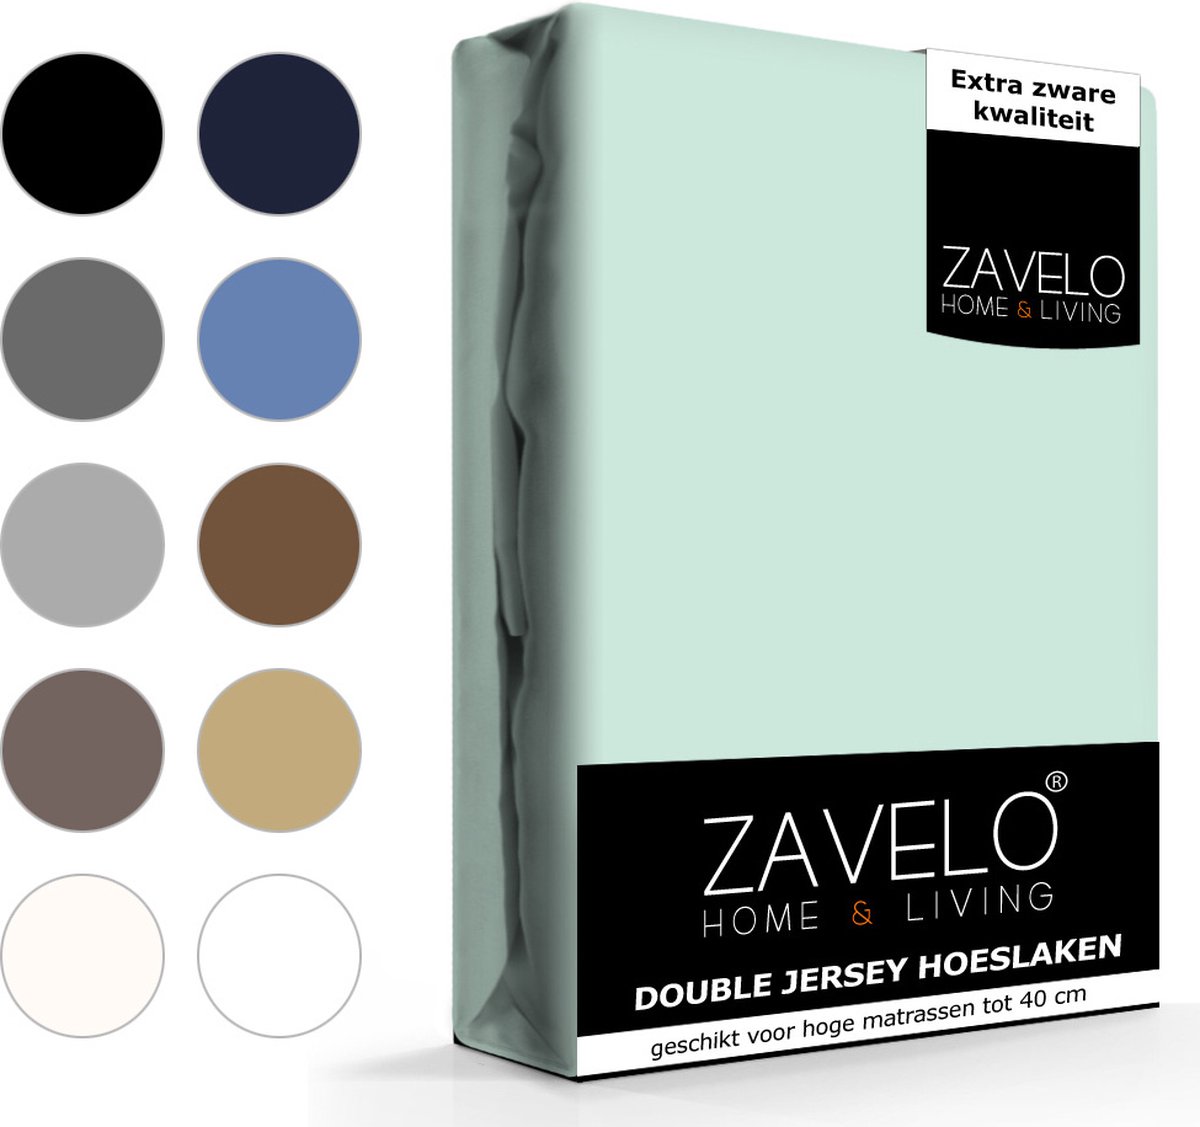 Slaaptextiel Zavelo Double Jersey Hoeslaken Pastel-2-persoons (140x200 Cm) - Blauw